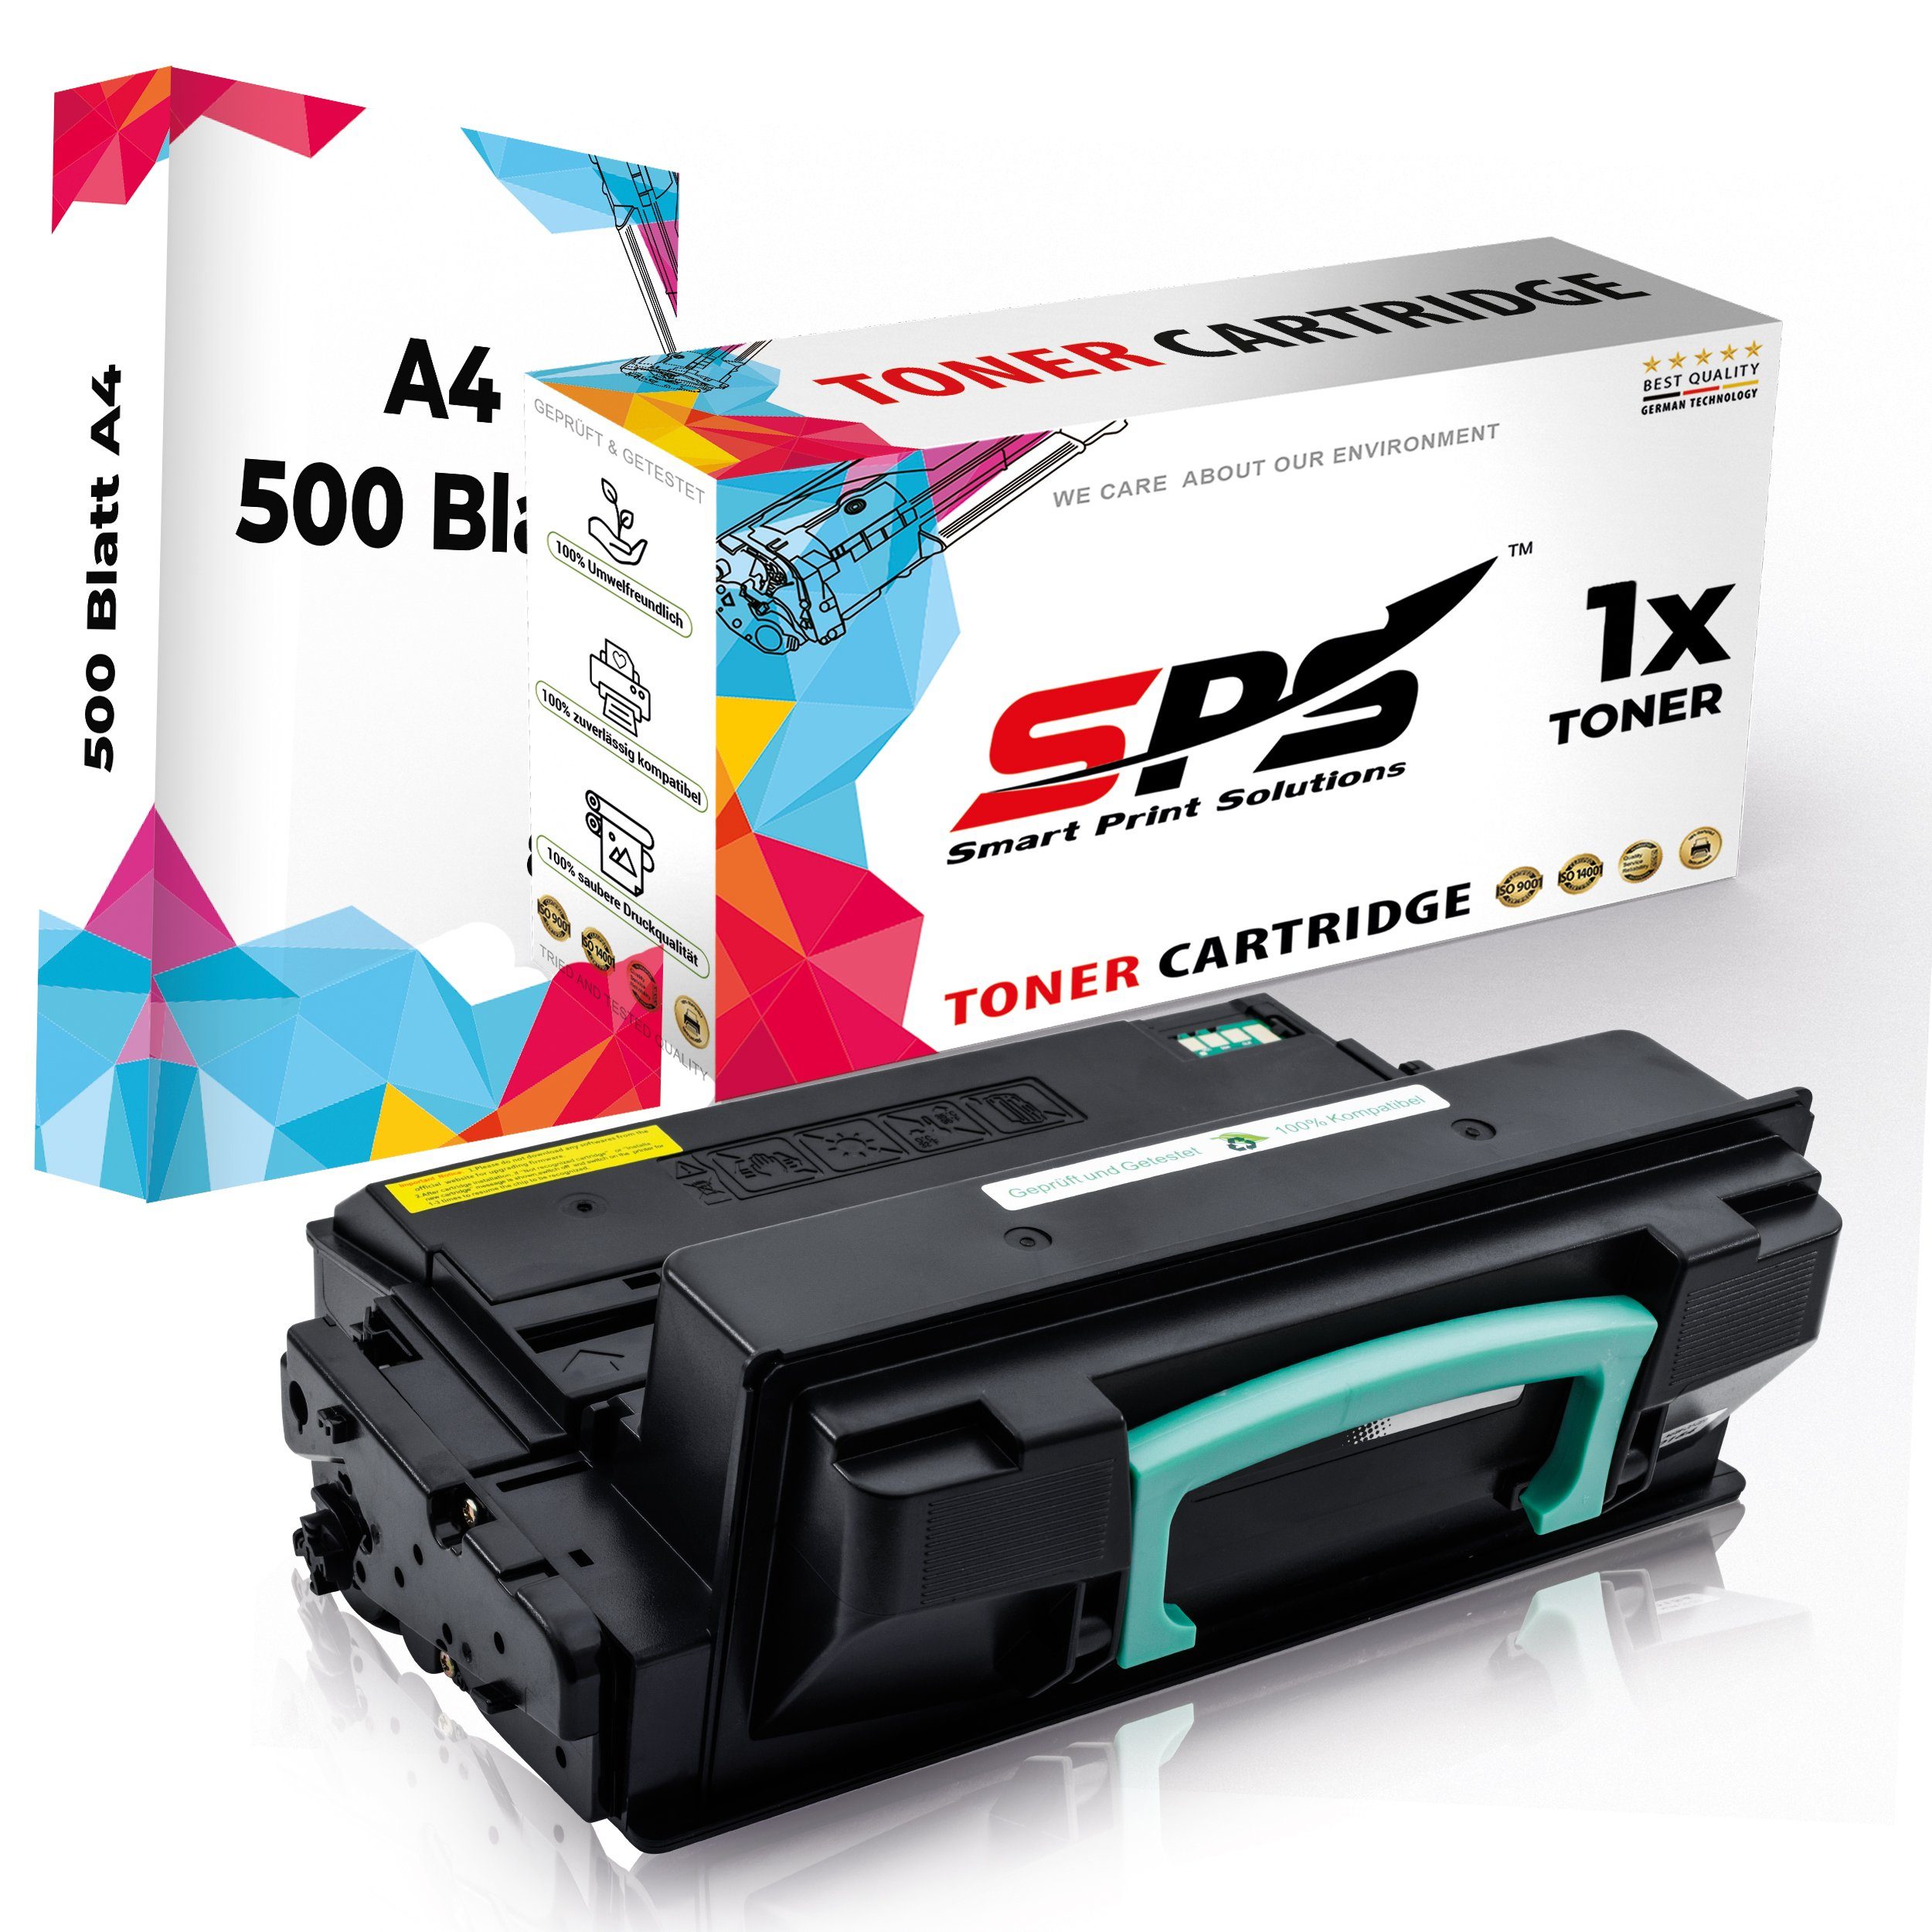 SPS Tonerkartusche Kompatibel für Samsung Xpress M4020D 203L MLT-D203, (1er Pack + A4 Papier, 1x Schwarz Toner)